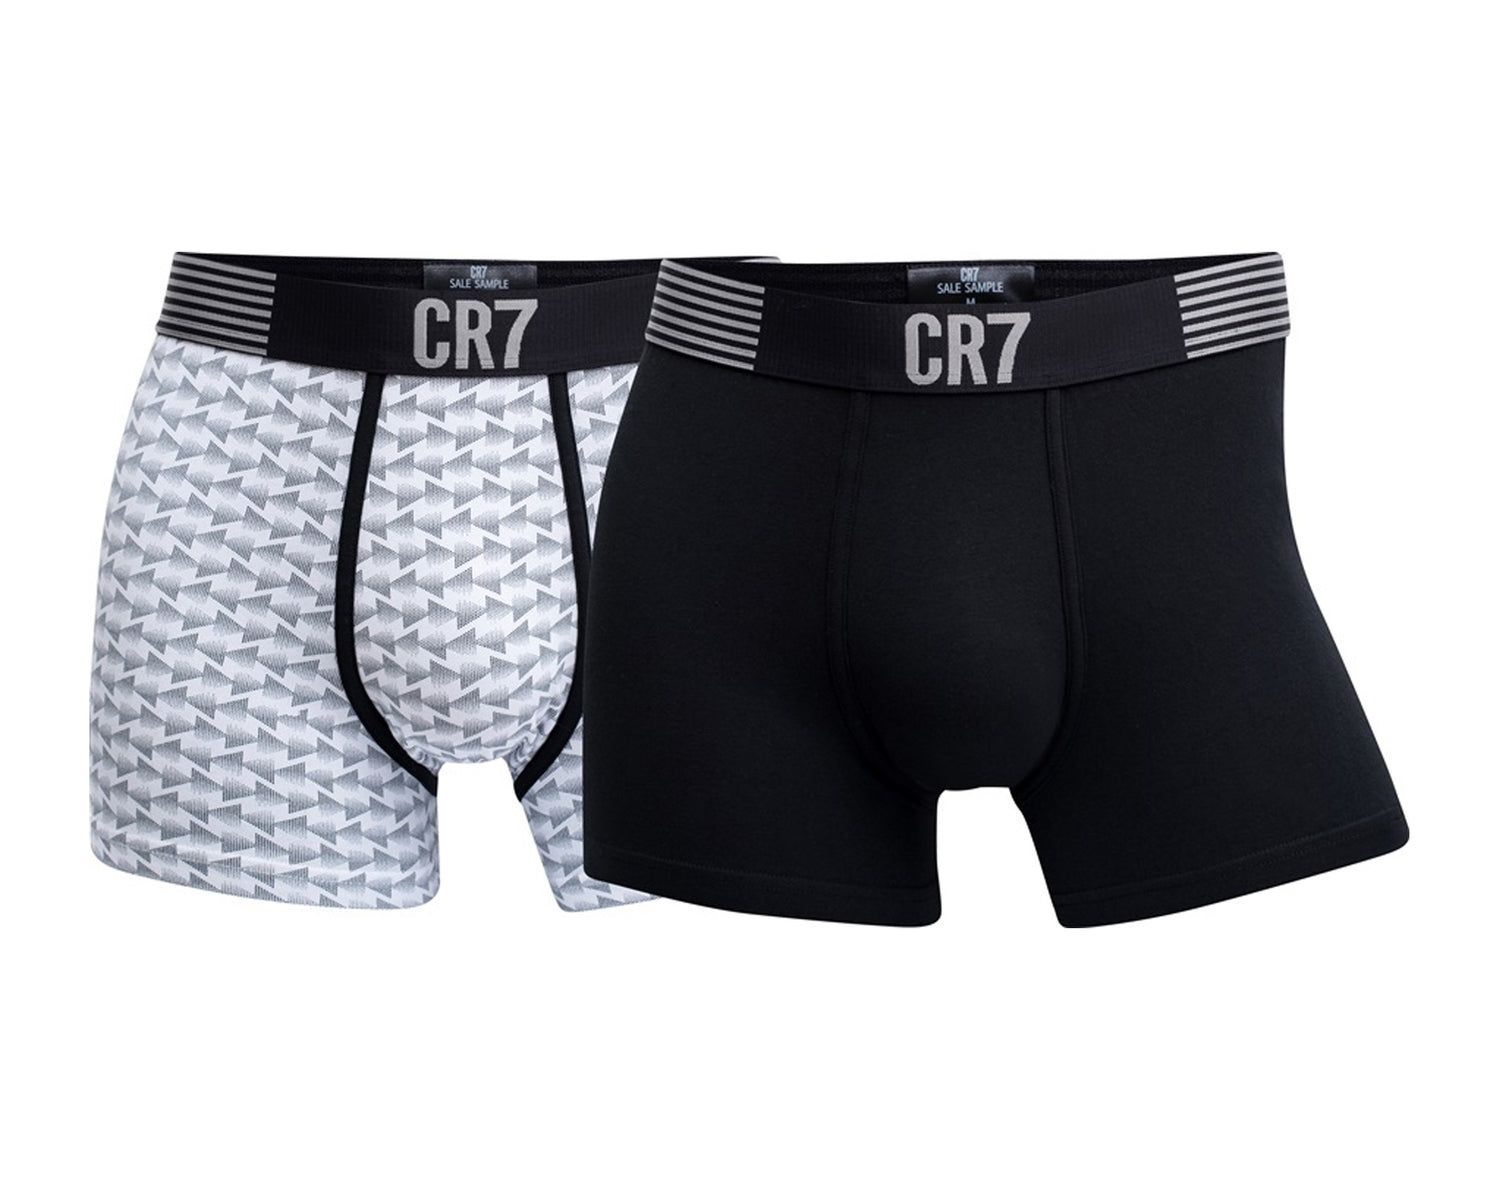 Cristiano Ronaldo CR7 Fashion 2-Pack Trunk Boxer Briefs Men's Underwear